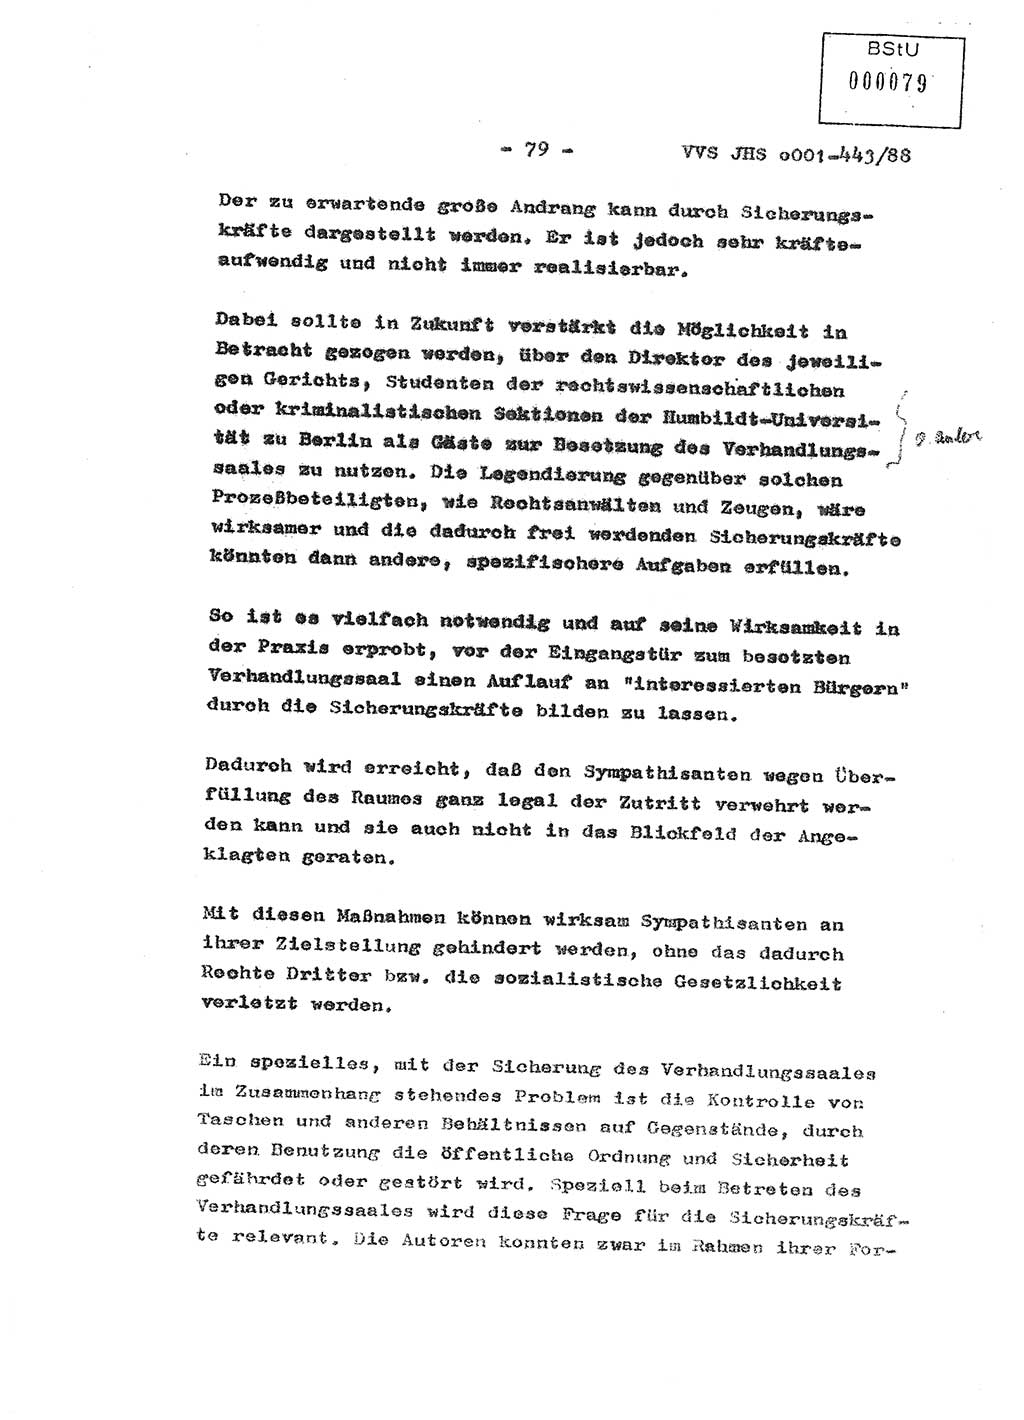 Diplomarbeit Hauptmann Michael Rast (Abt. ⅩⅣ), Major Bernd Rahaus (Abt. ⅩⅣ), Ministerium für Staatssicherheit (MfS) [Deutsche Demokratische Republik (DDR)], Juristische Hochschule (JHS), Vertrauliche Verschlußsache (VVS) o001-443/88, Potsdam 1988, Seite 80 (Dipl.-Arb. MfS DDR JHS VVS o001-443/88 1988, S. 80)